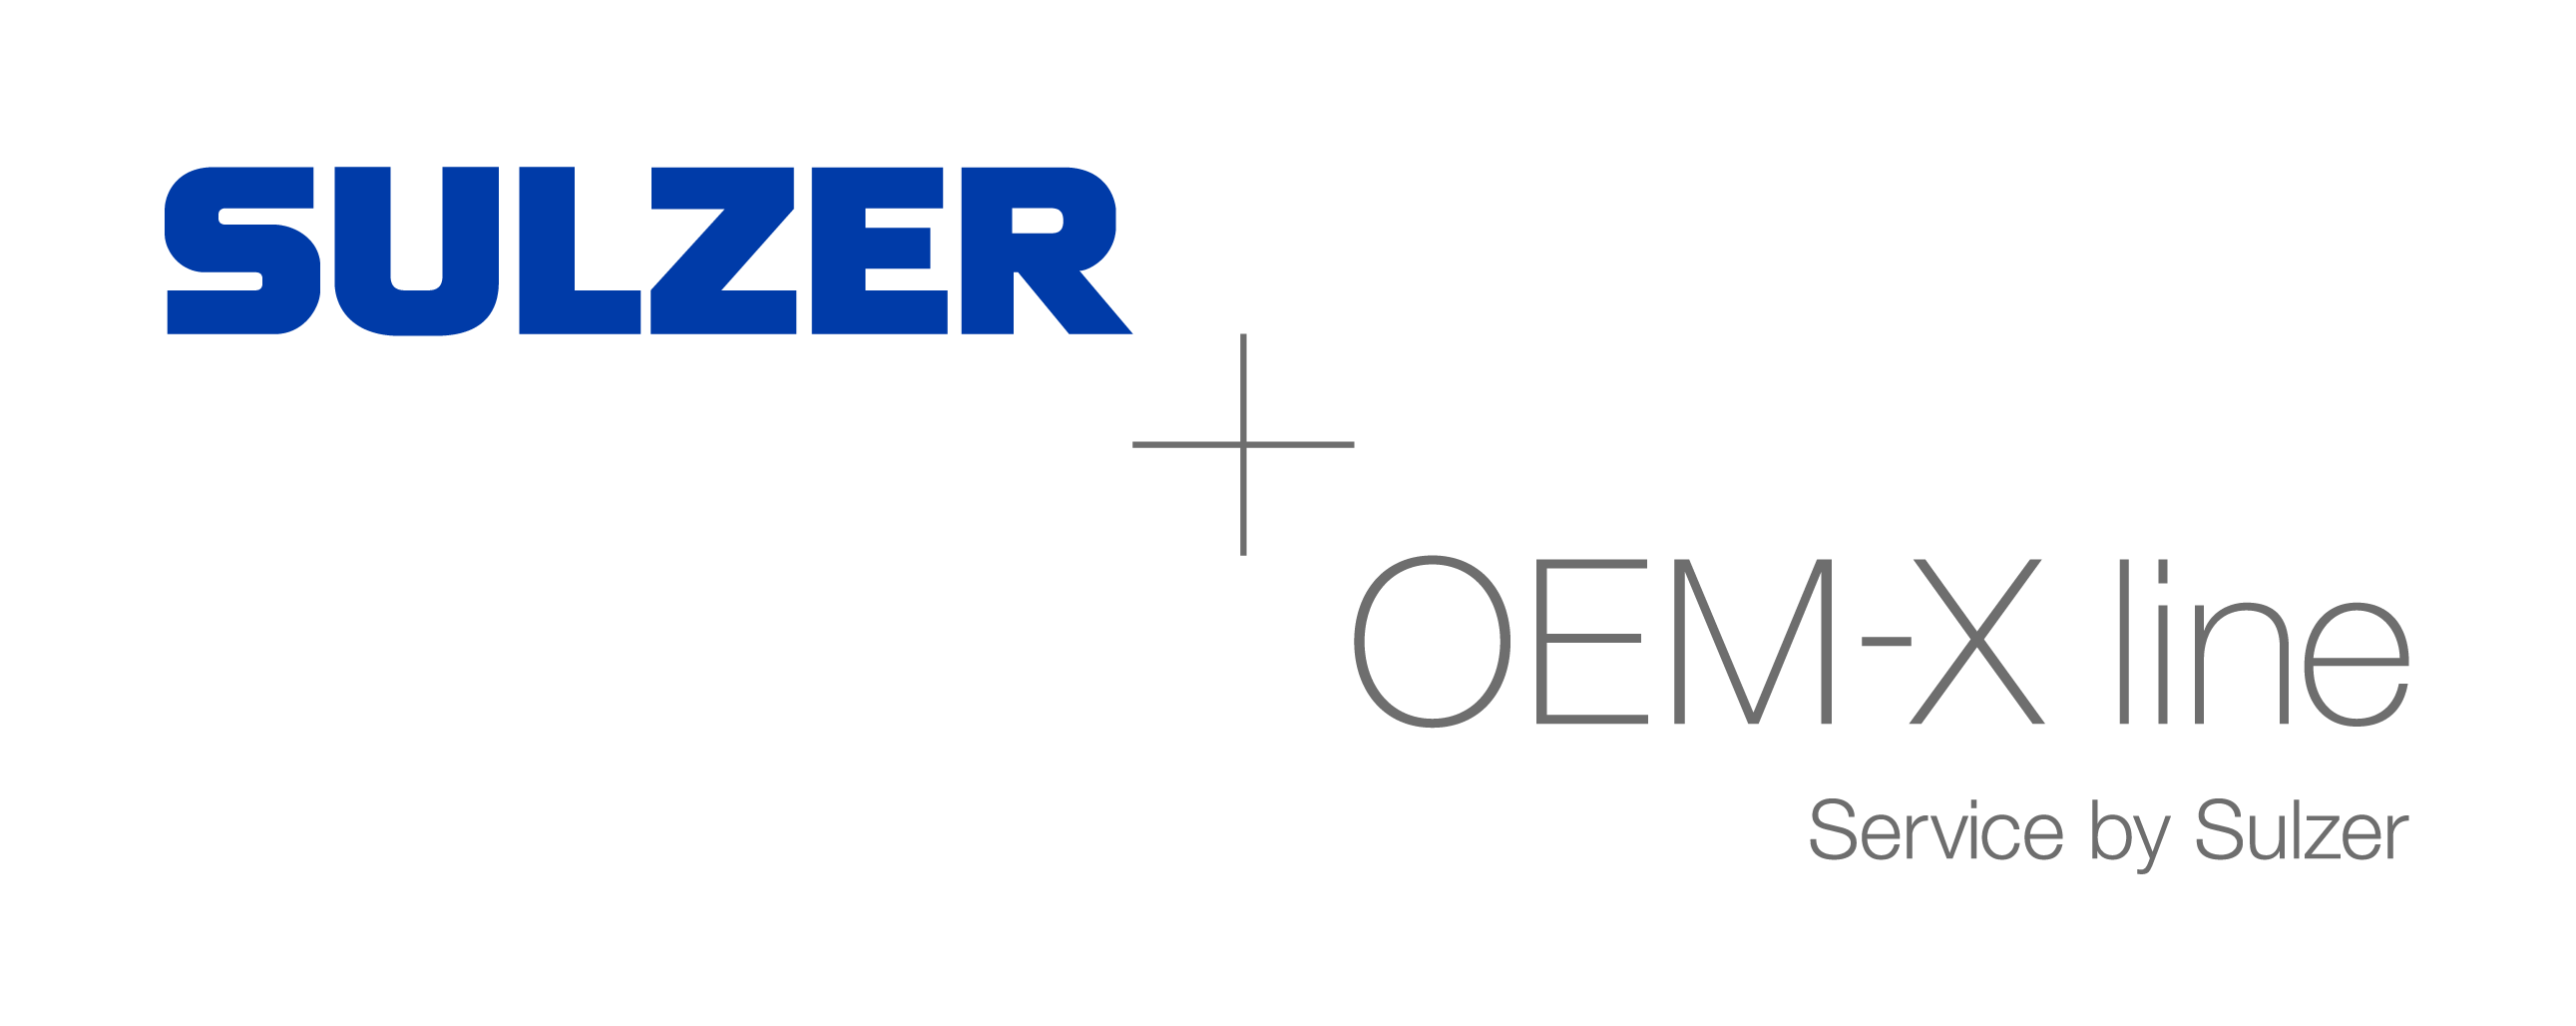 Sulzer가 모든 펌프 브랜드에 유연한 수리 및 개조 솔루션을 제공하는 유일한 연중무휴 고품질 펌프 서비스인 OEM-X 라인을 출시합니다.